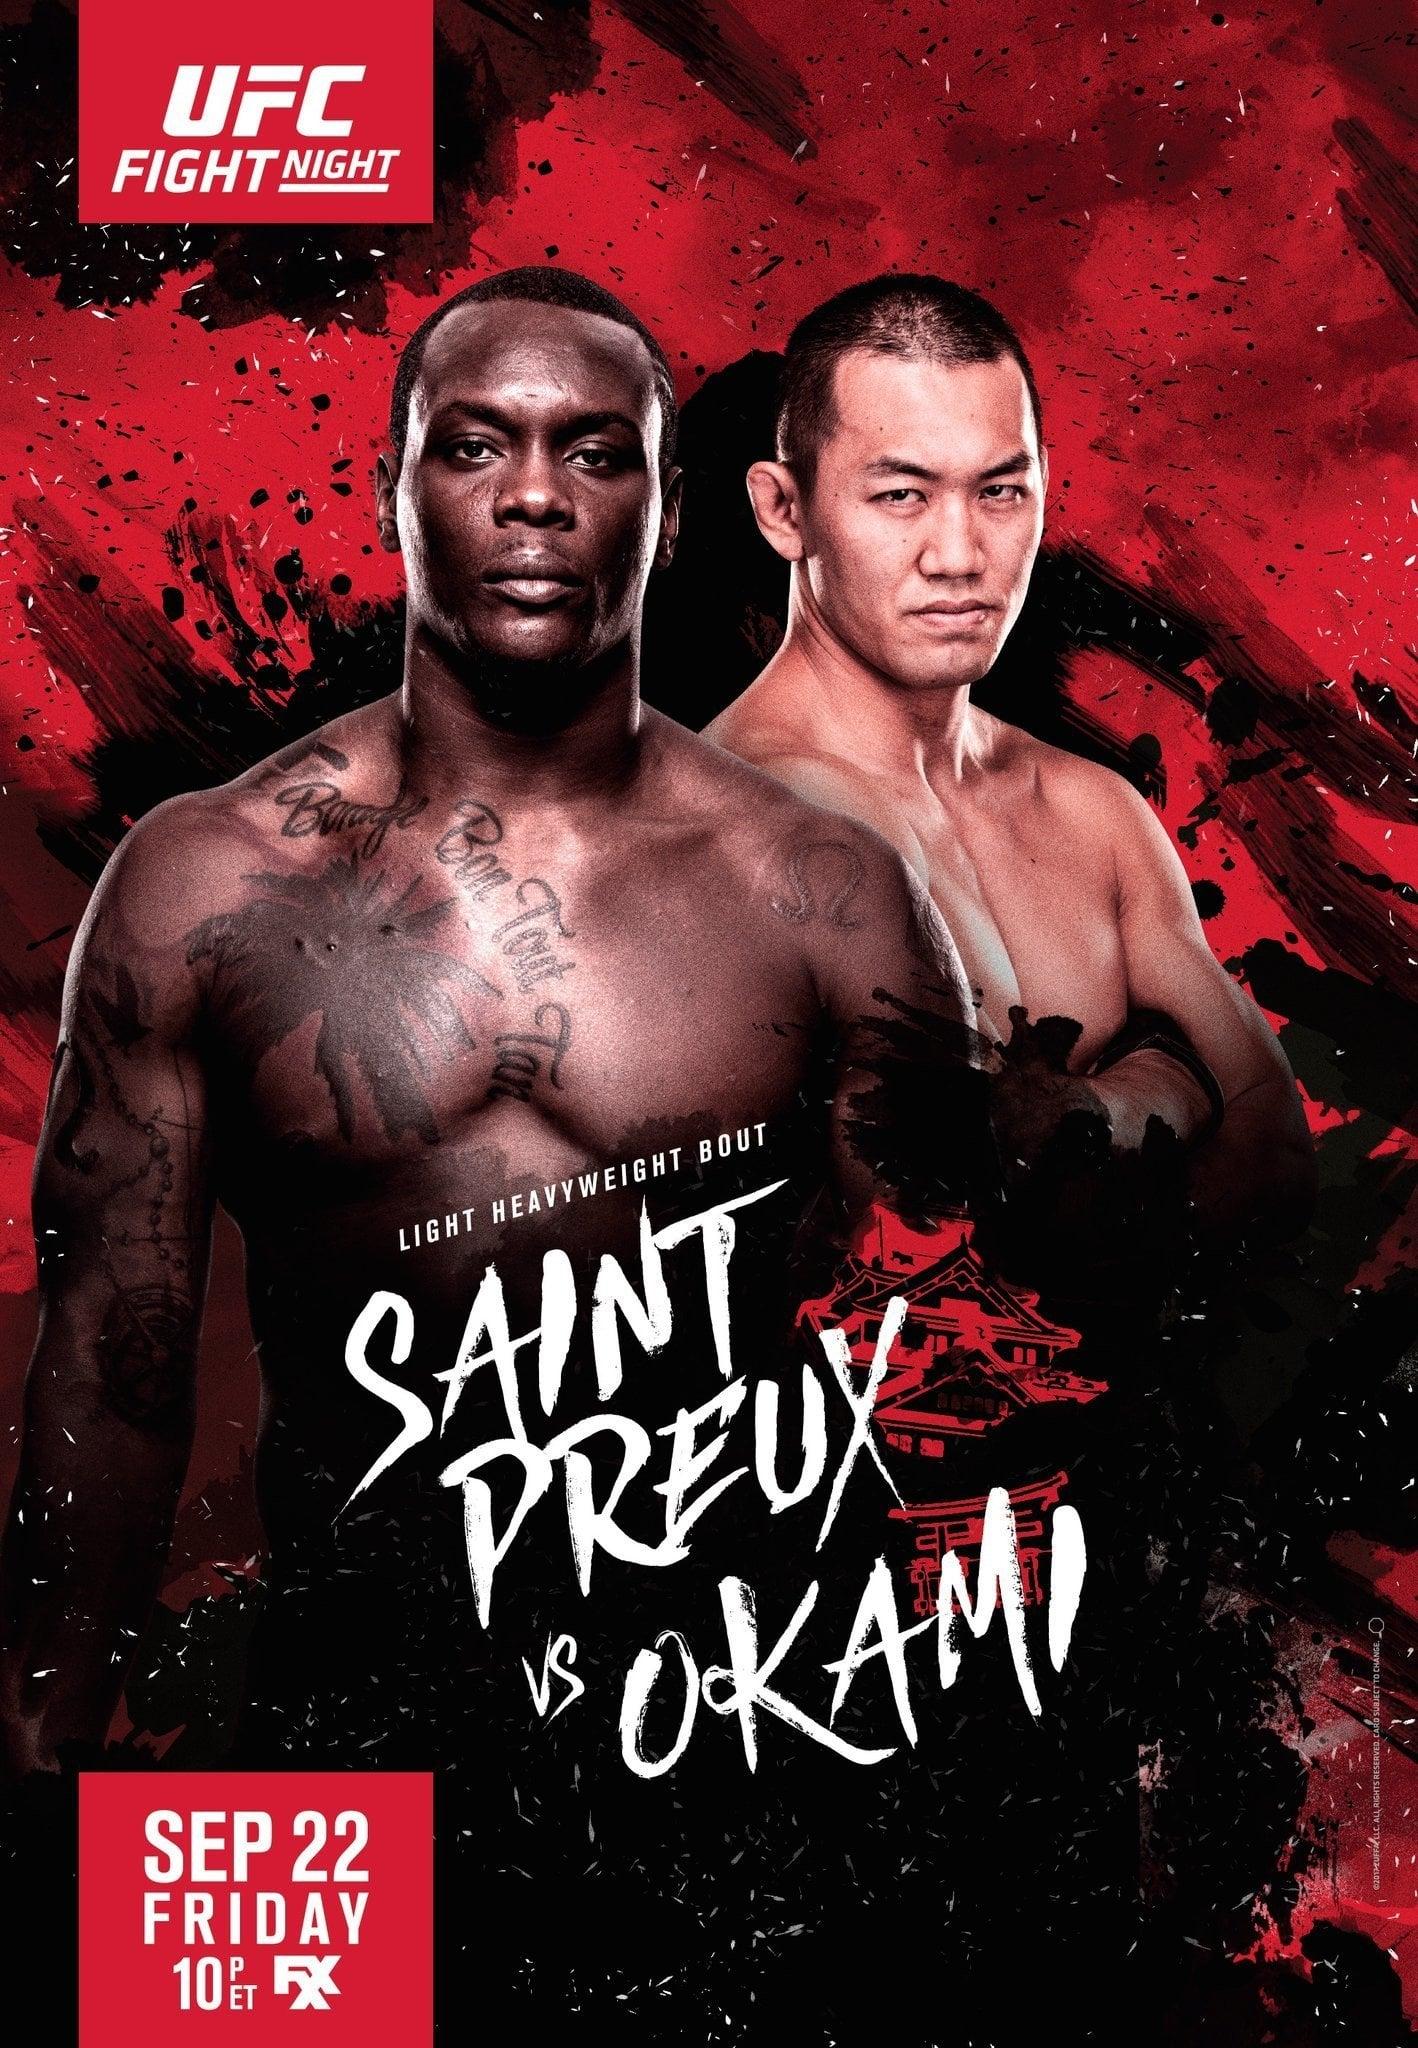 UFC Fight Night 117: Saint Preux vs. Okami poster